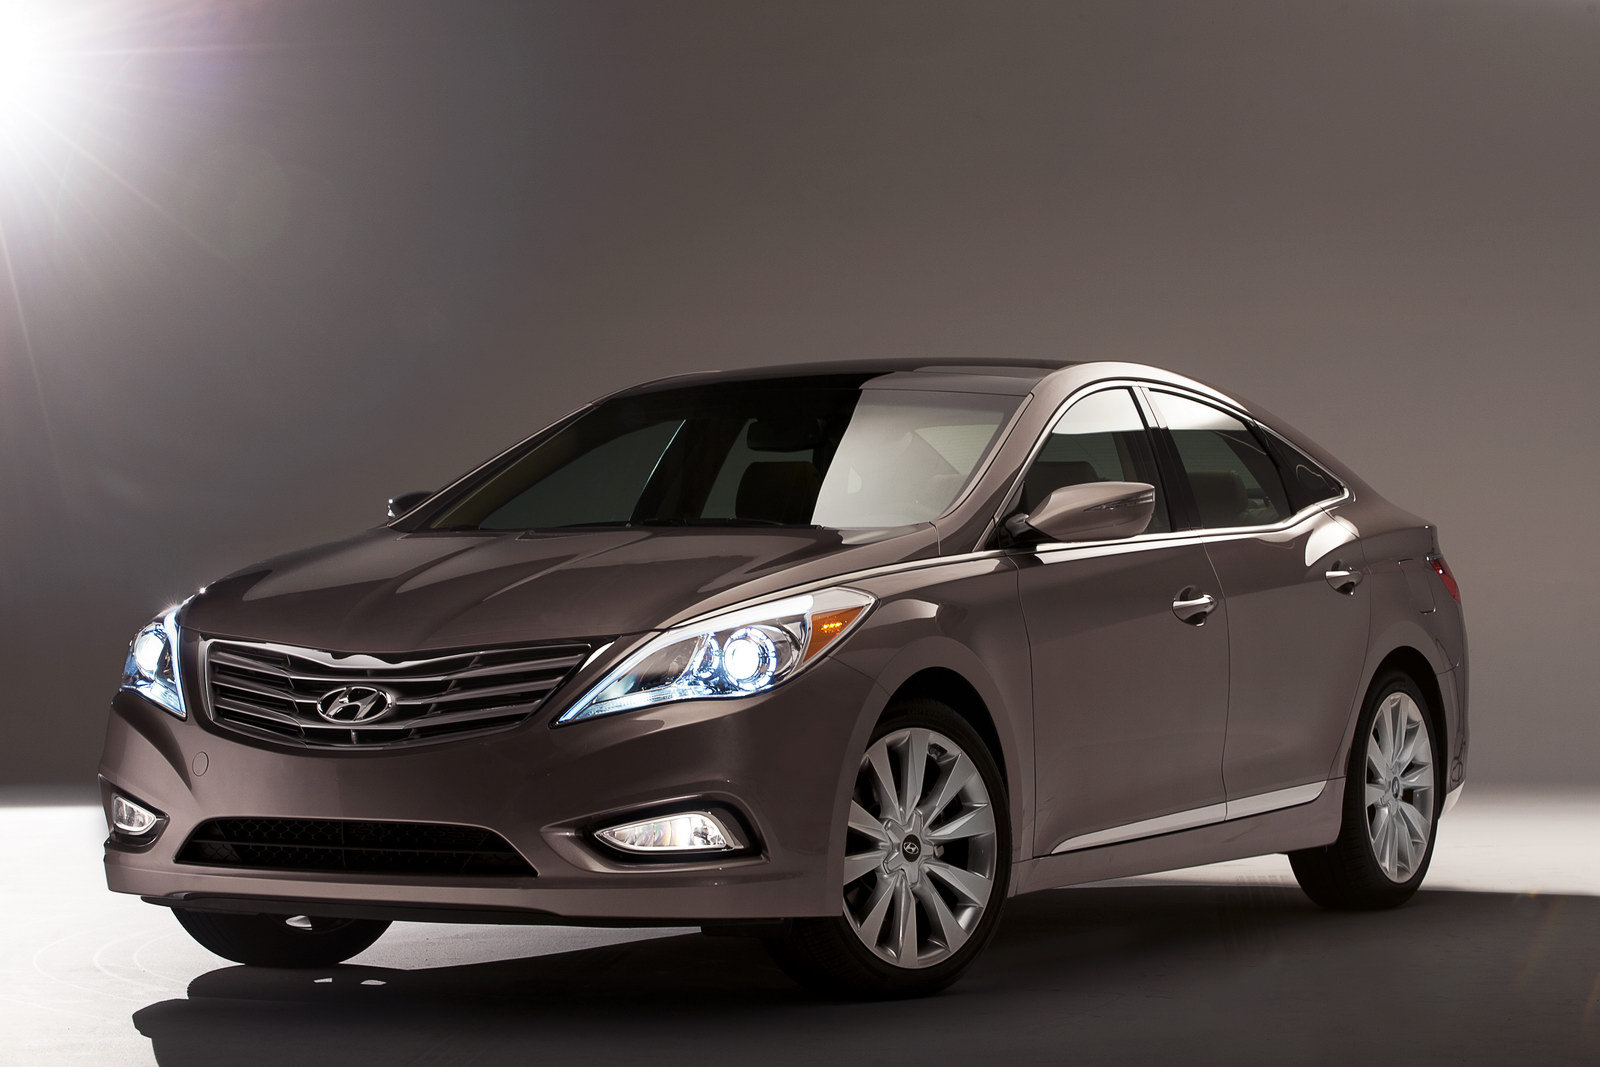 Noua generatie Hyundai Azera adopta stilul Fluidic Sculpture al ultimelor modele Hyundai